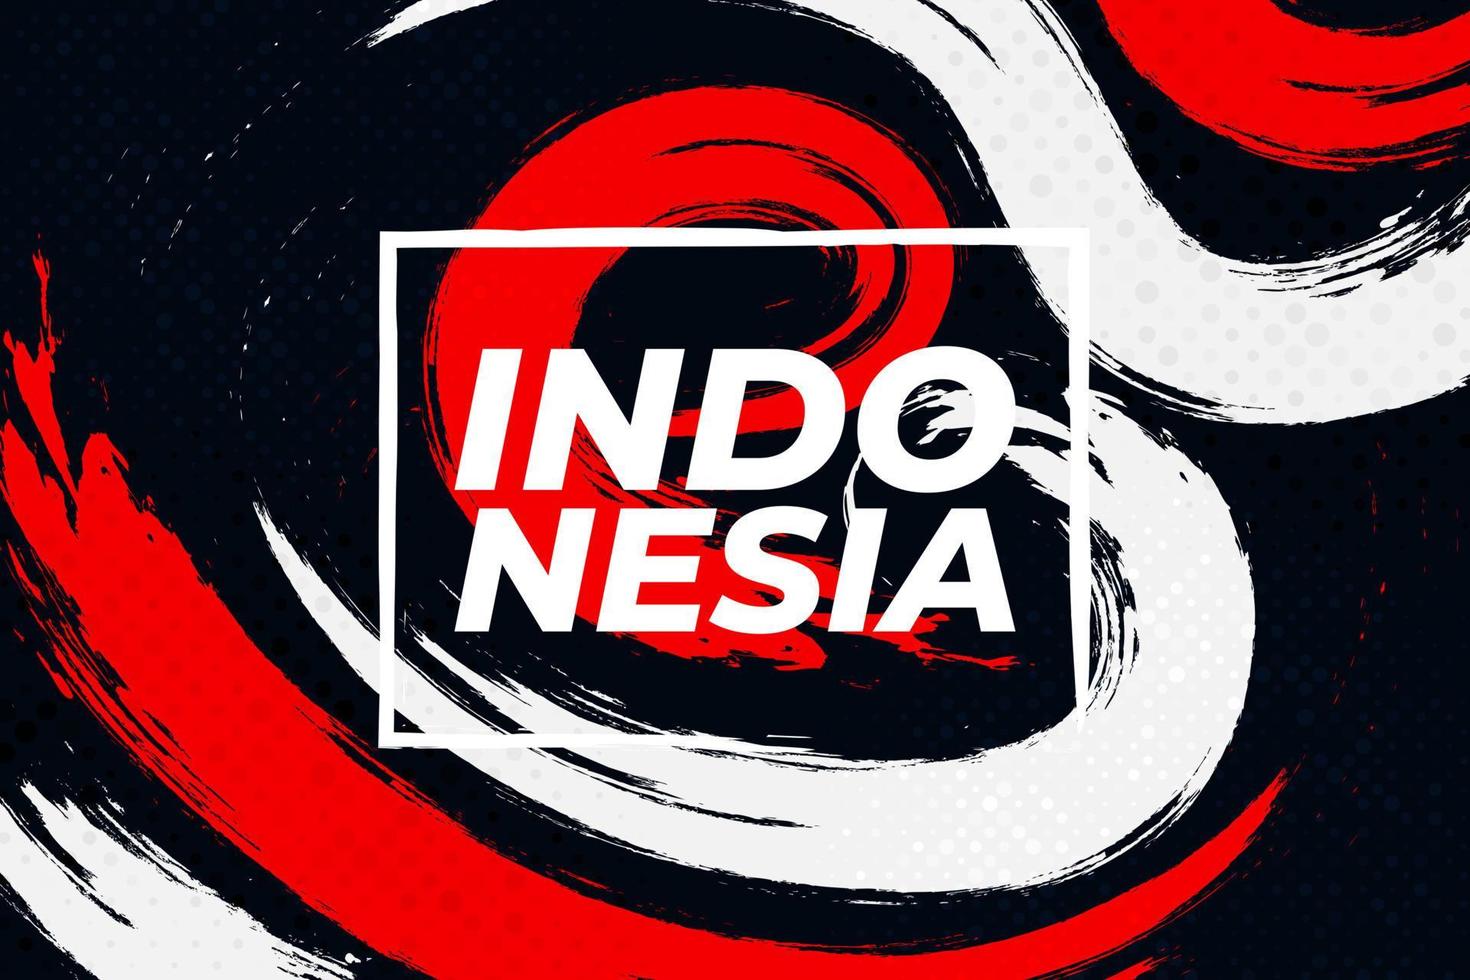 vlag van indonesië met borstel concept. gelukkige indonesische onafhankelijkheidsdag. vlag van indonesië in grunge-stijl vector